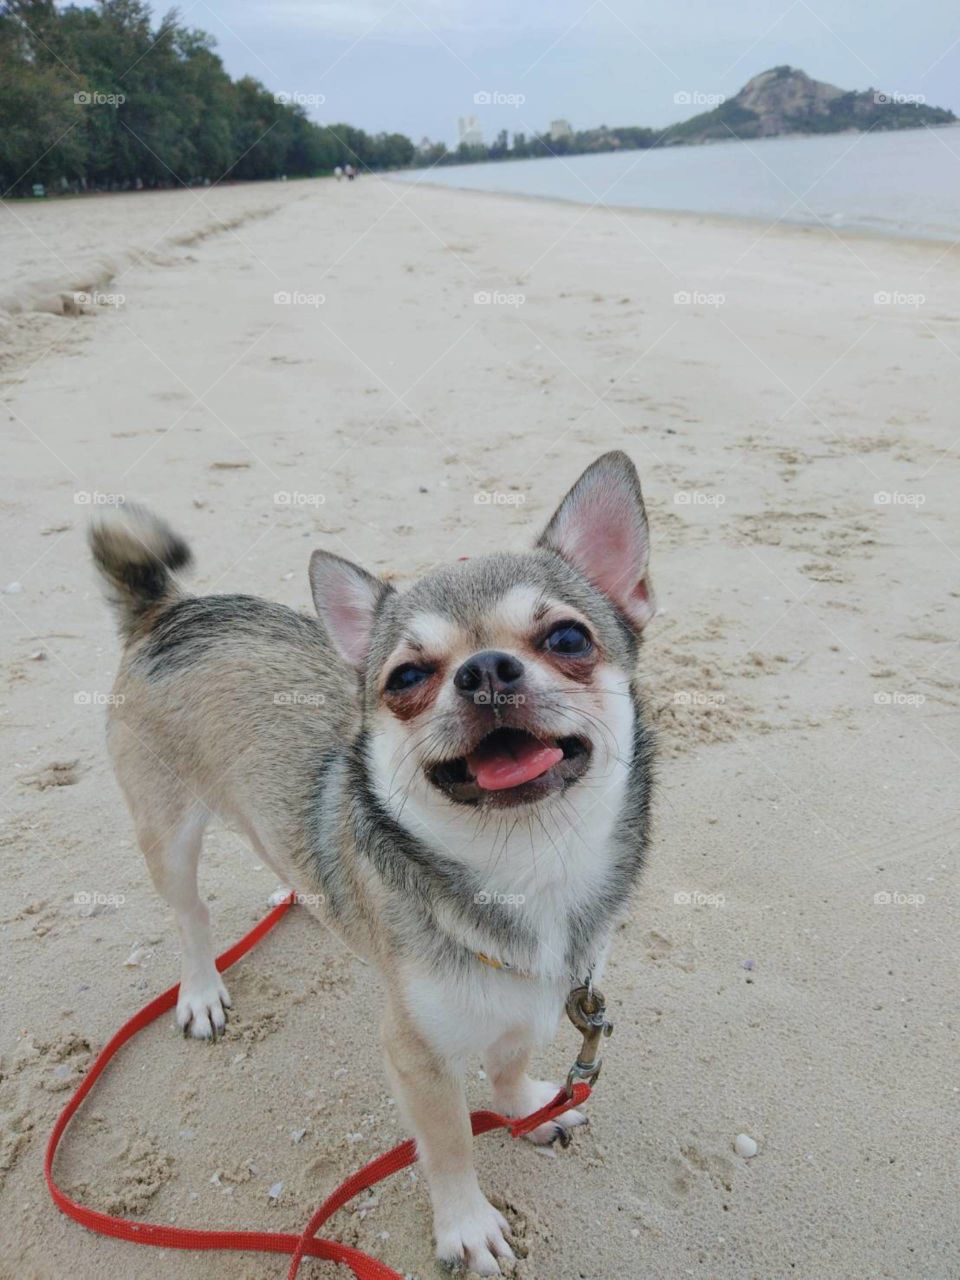 My dog on the beach.